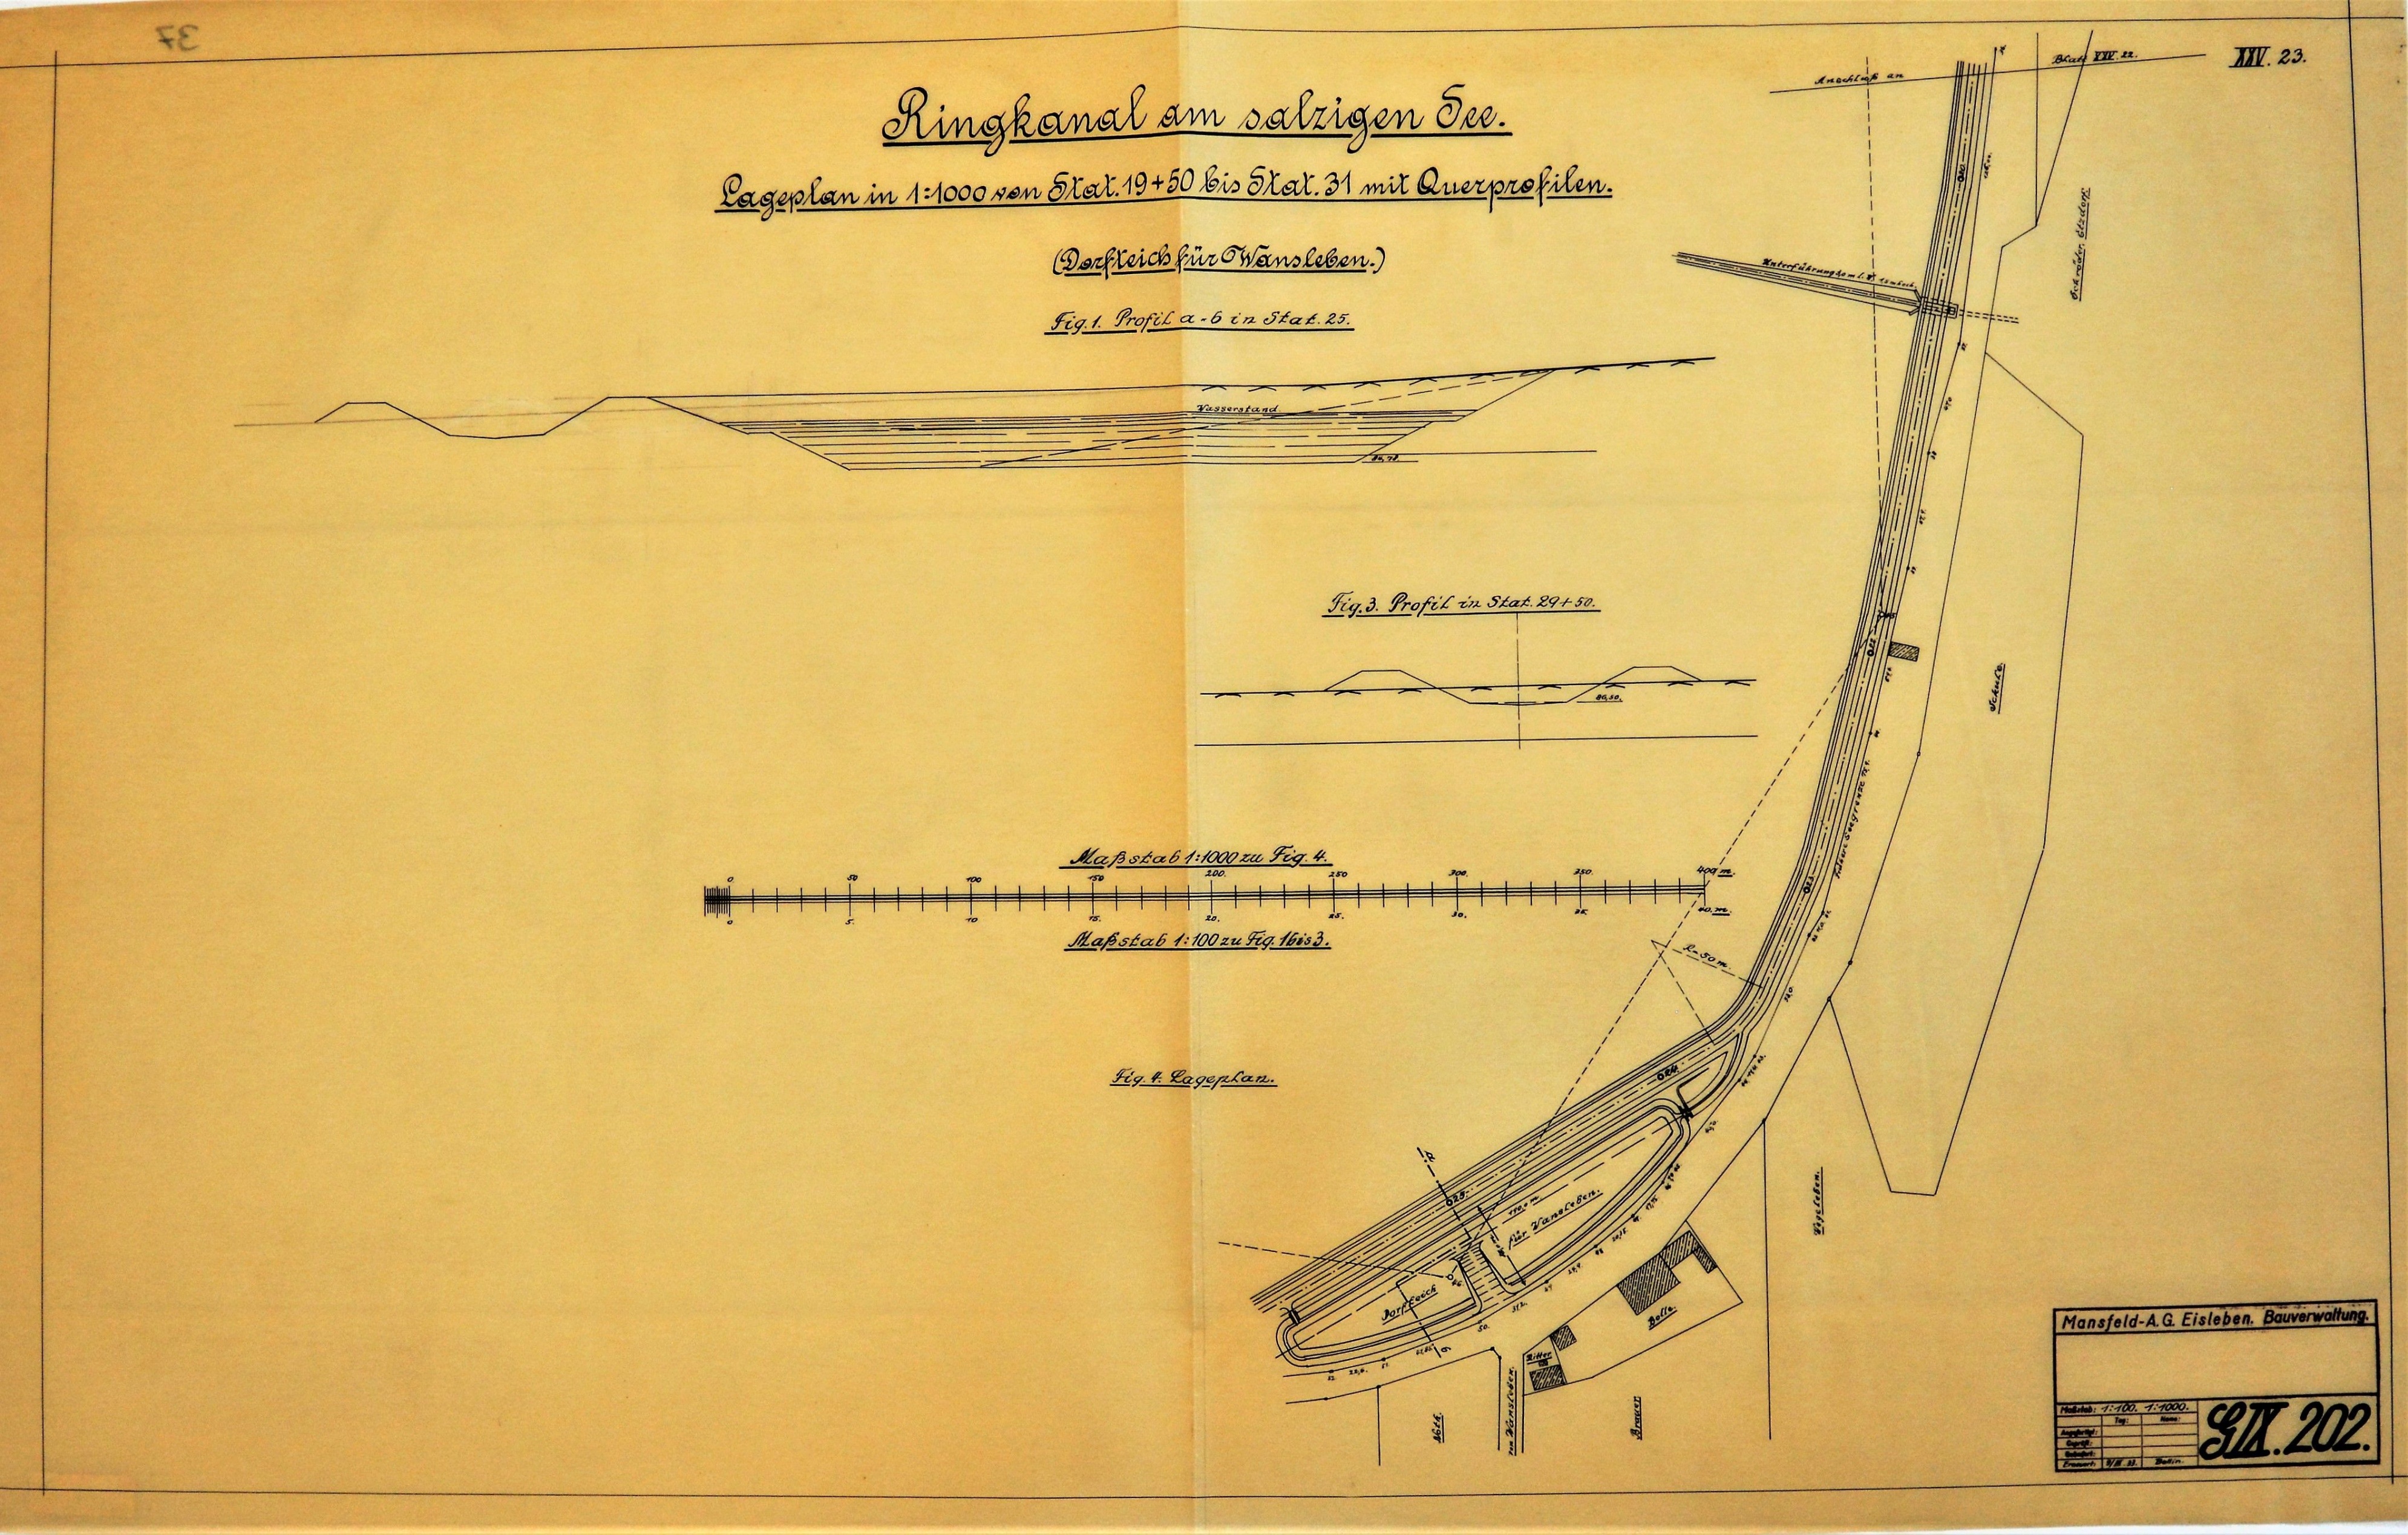 Ringcanal am salzigen See Lageplan in 1:1000 von Stat. 19+50  bis Stat. 31 mit Querprofilen. (Dorfteich für Wansleben.) (Mansfeld-Museum im Humboldt-Schloss CC BY-NC-SA)